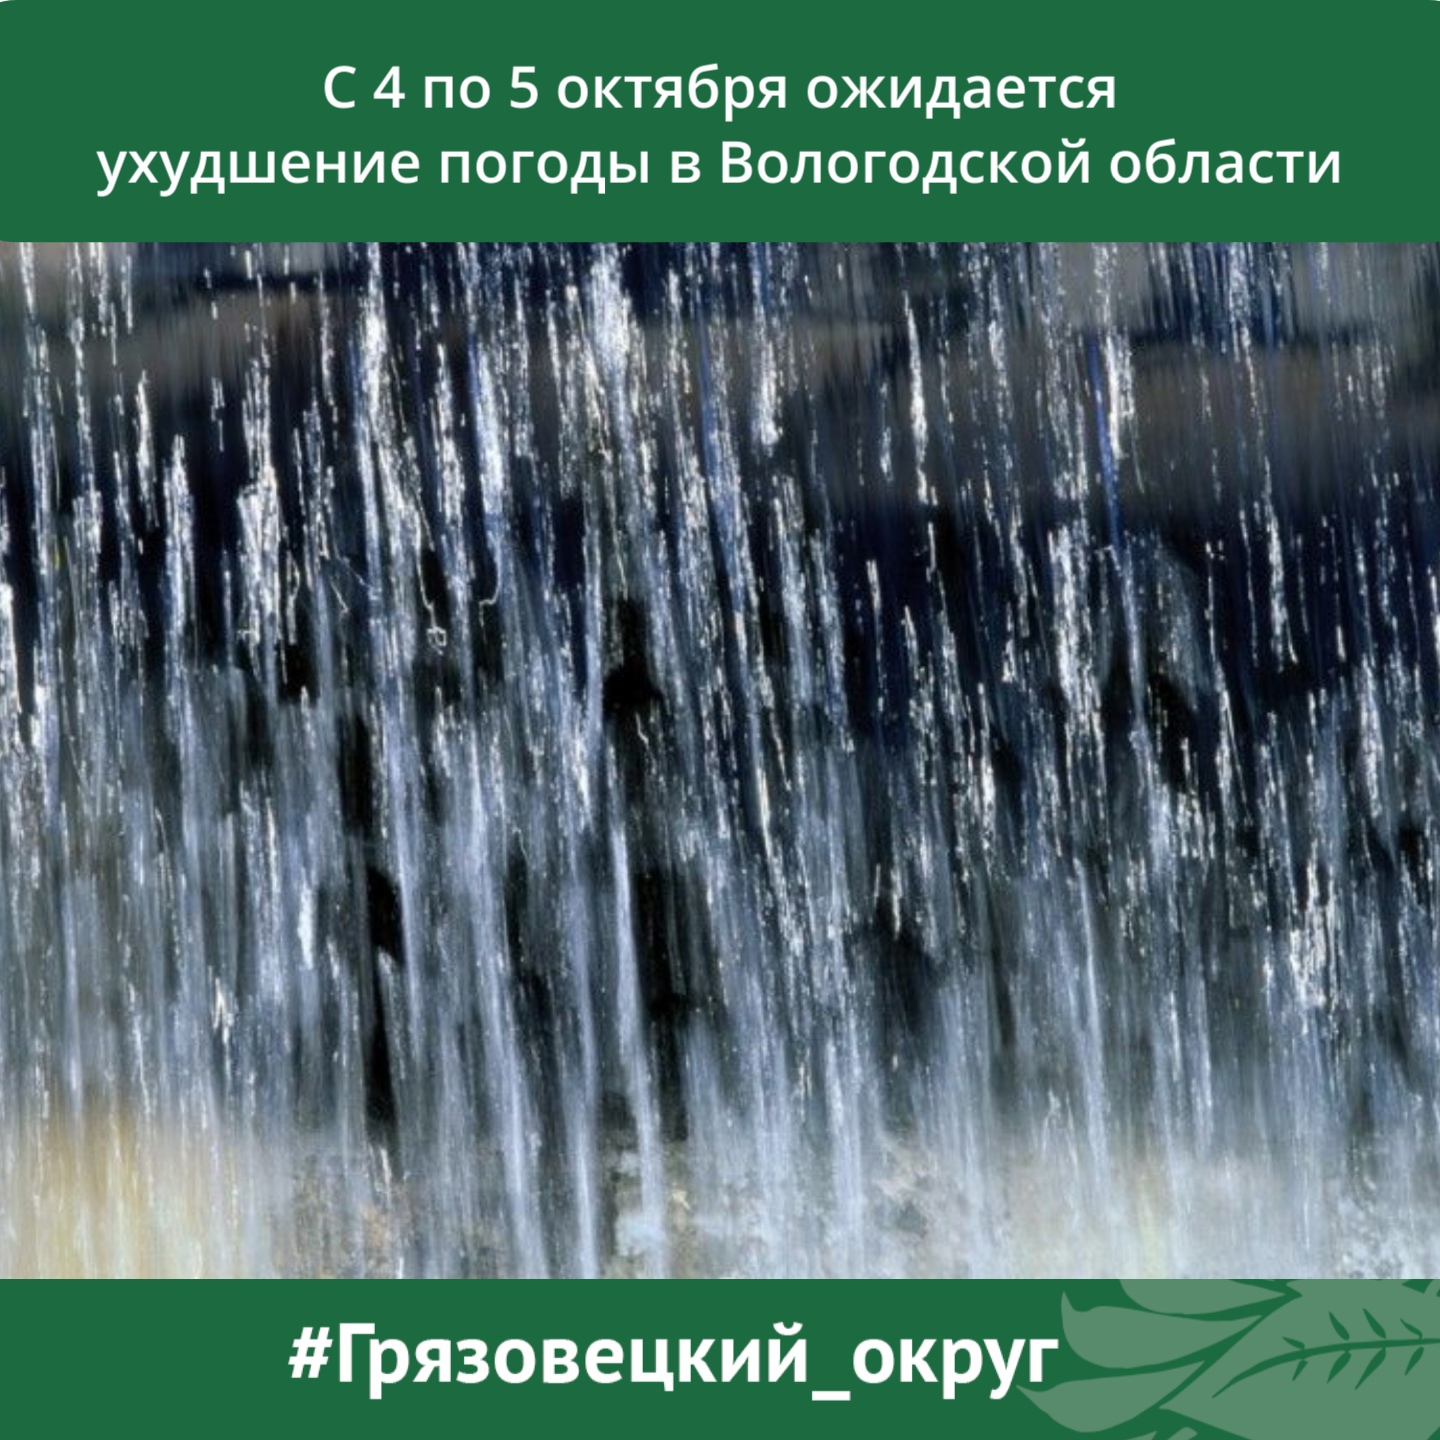 МЧС Вологодской области предупреждает об ухудшении погоды.